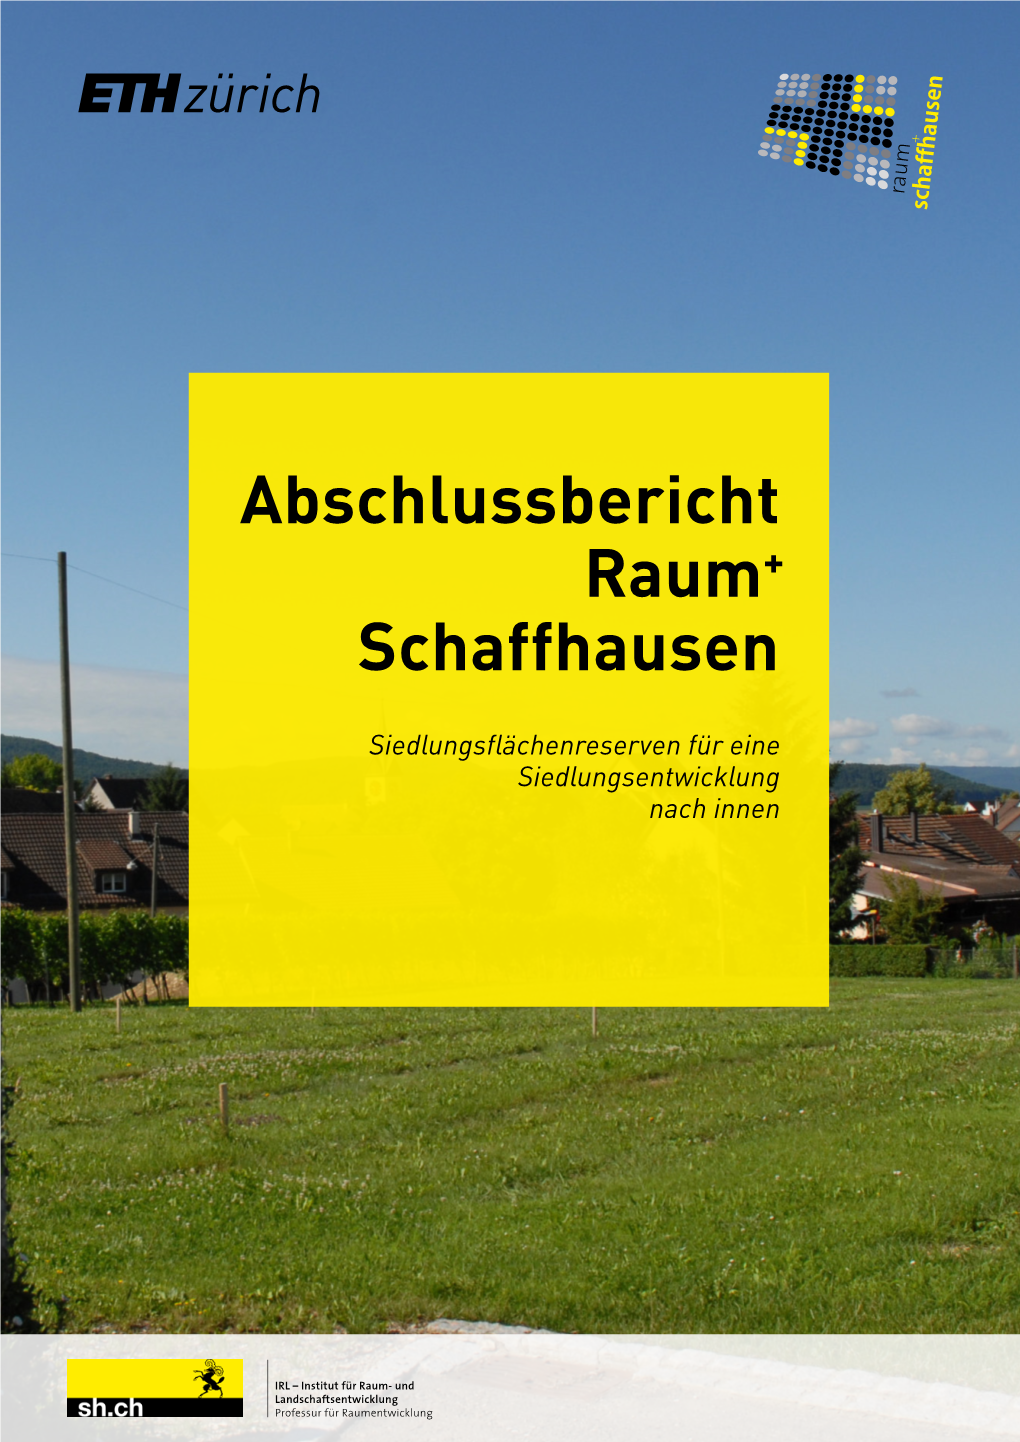 2013 Abschlussbericht Raum + Schaffhausen